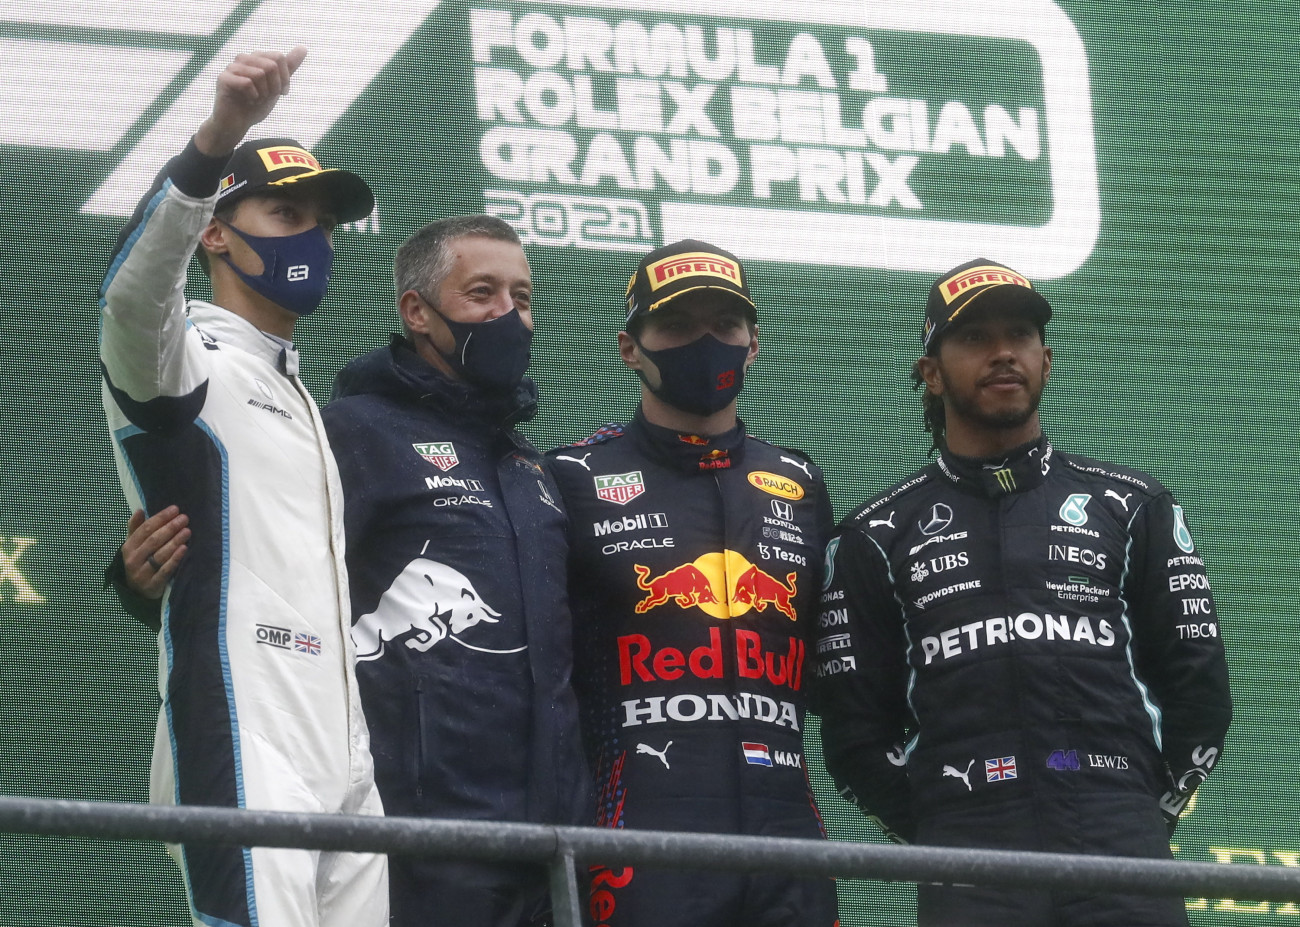 Spa-Francorchamps, 2021. augusztus 29.
A győztes Max Verstappen, a Red Bull holland versenyzője (j2), a második helyezett George Russell, a Williams brit versenyzője (b) és a harmadik helyezett Lewis Hamilton, a Mercedes brit versenyzője (j) a Forma-1-es autós gyorsasági világbajnokság Belga Nagydíjának eredményhirdetésén a spa-francorchampsi pályán 2021. augusztus 29-én. A futamot kétszer próbálták elindítani, de az időjárási körülmények miatt a mezőny mindkét alkalommal csupán két kört tudott megtenni a biztonsági autó mögött, ez viszont elegendő volt ahhoz, hogy végeredményt hirdessenek.
MTI/EPA/Stephanie Lecocq